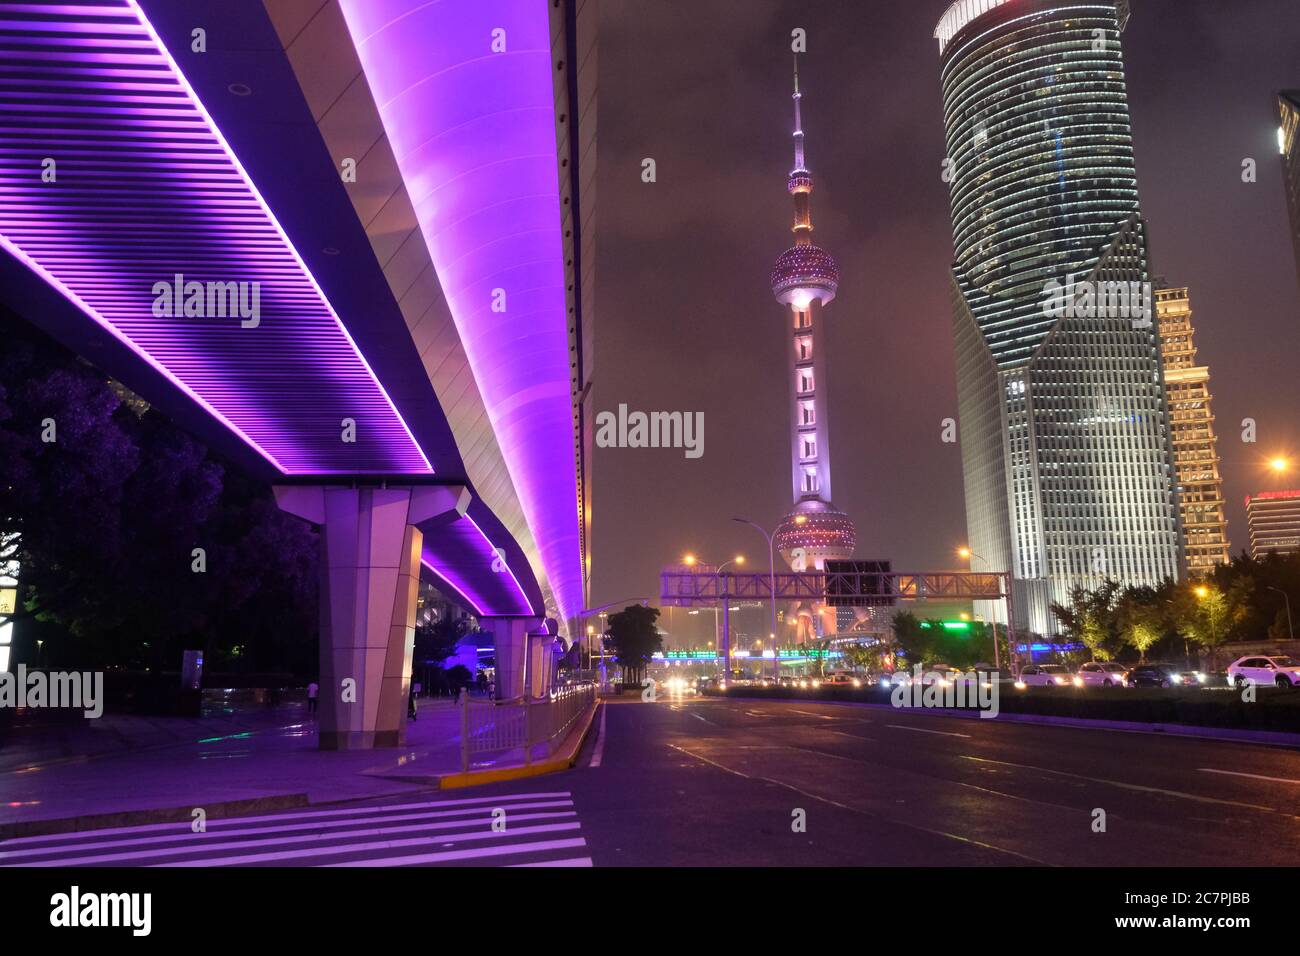 Scène nocturne de Shanghai Pudong moderne. Autoroute sous le pont autoroutier violet brillant. Célèbre tour de télévision orientale Pearl et bâtiments Banque D'Images